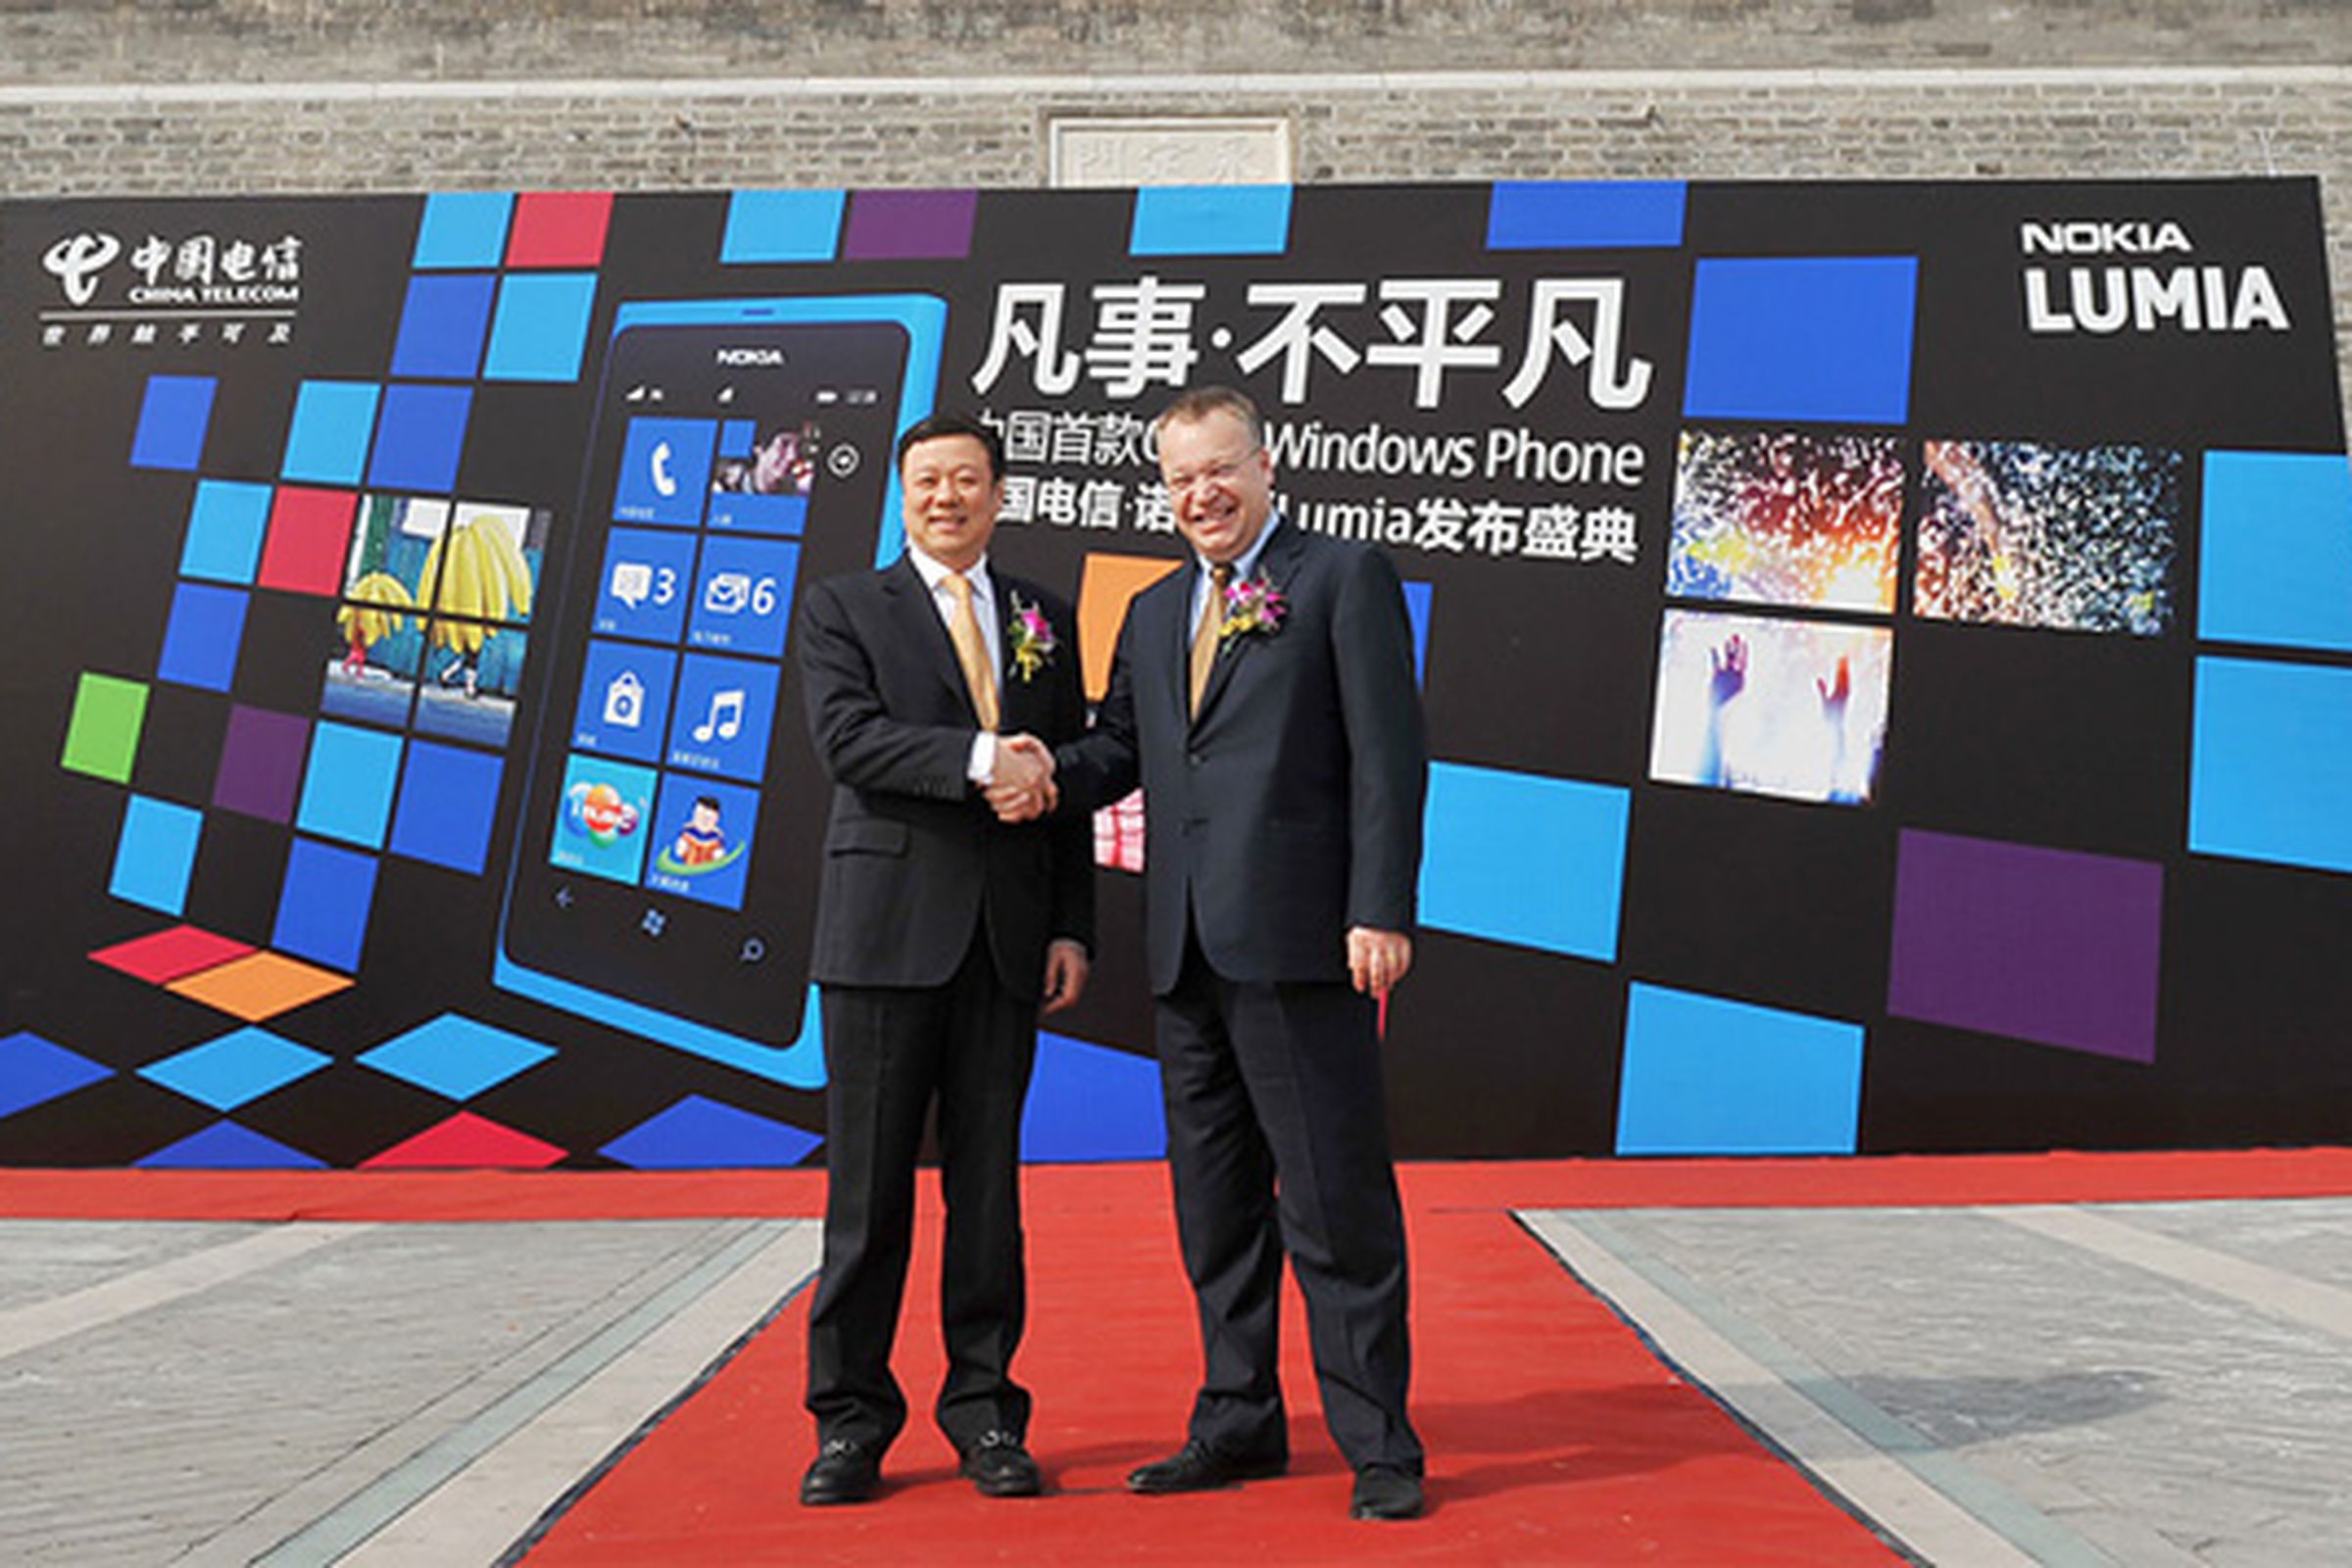 Nokia Lumia launch China